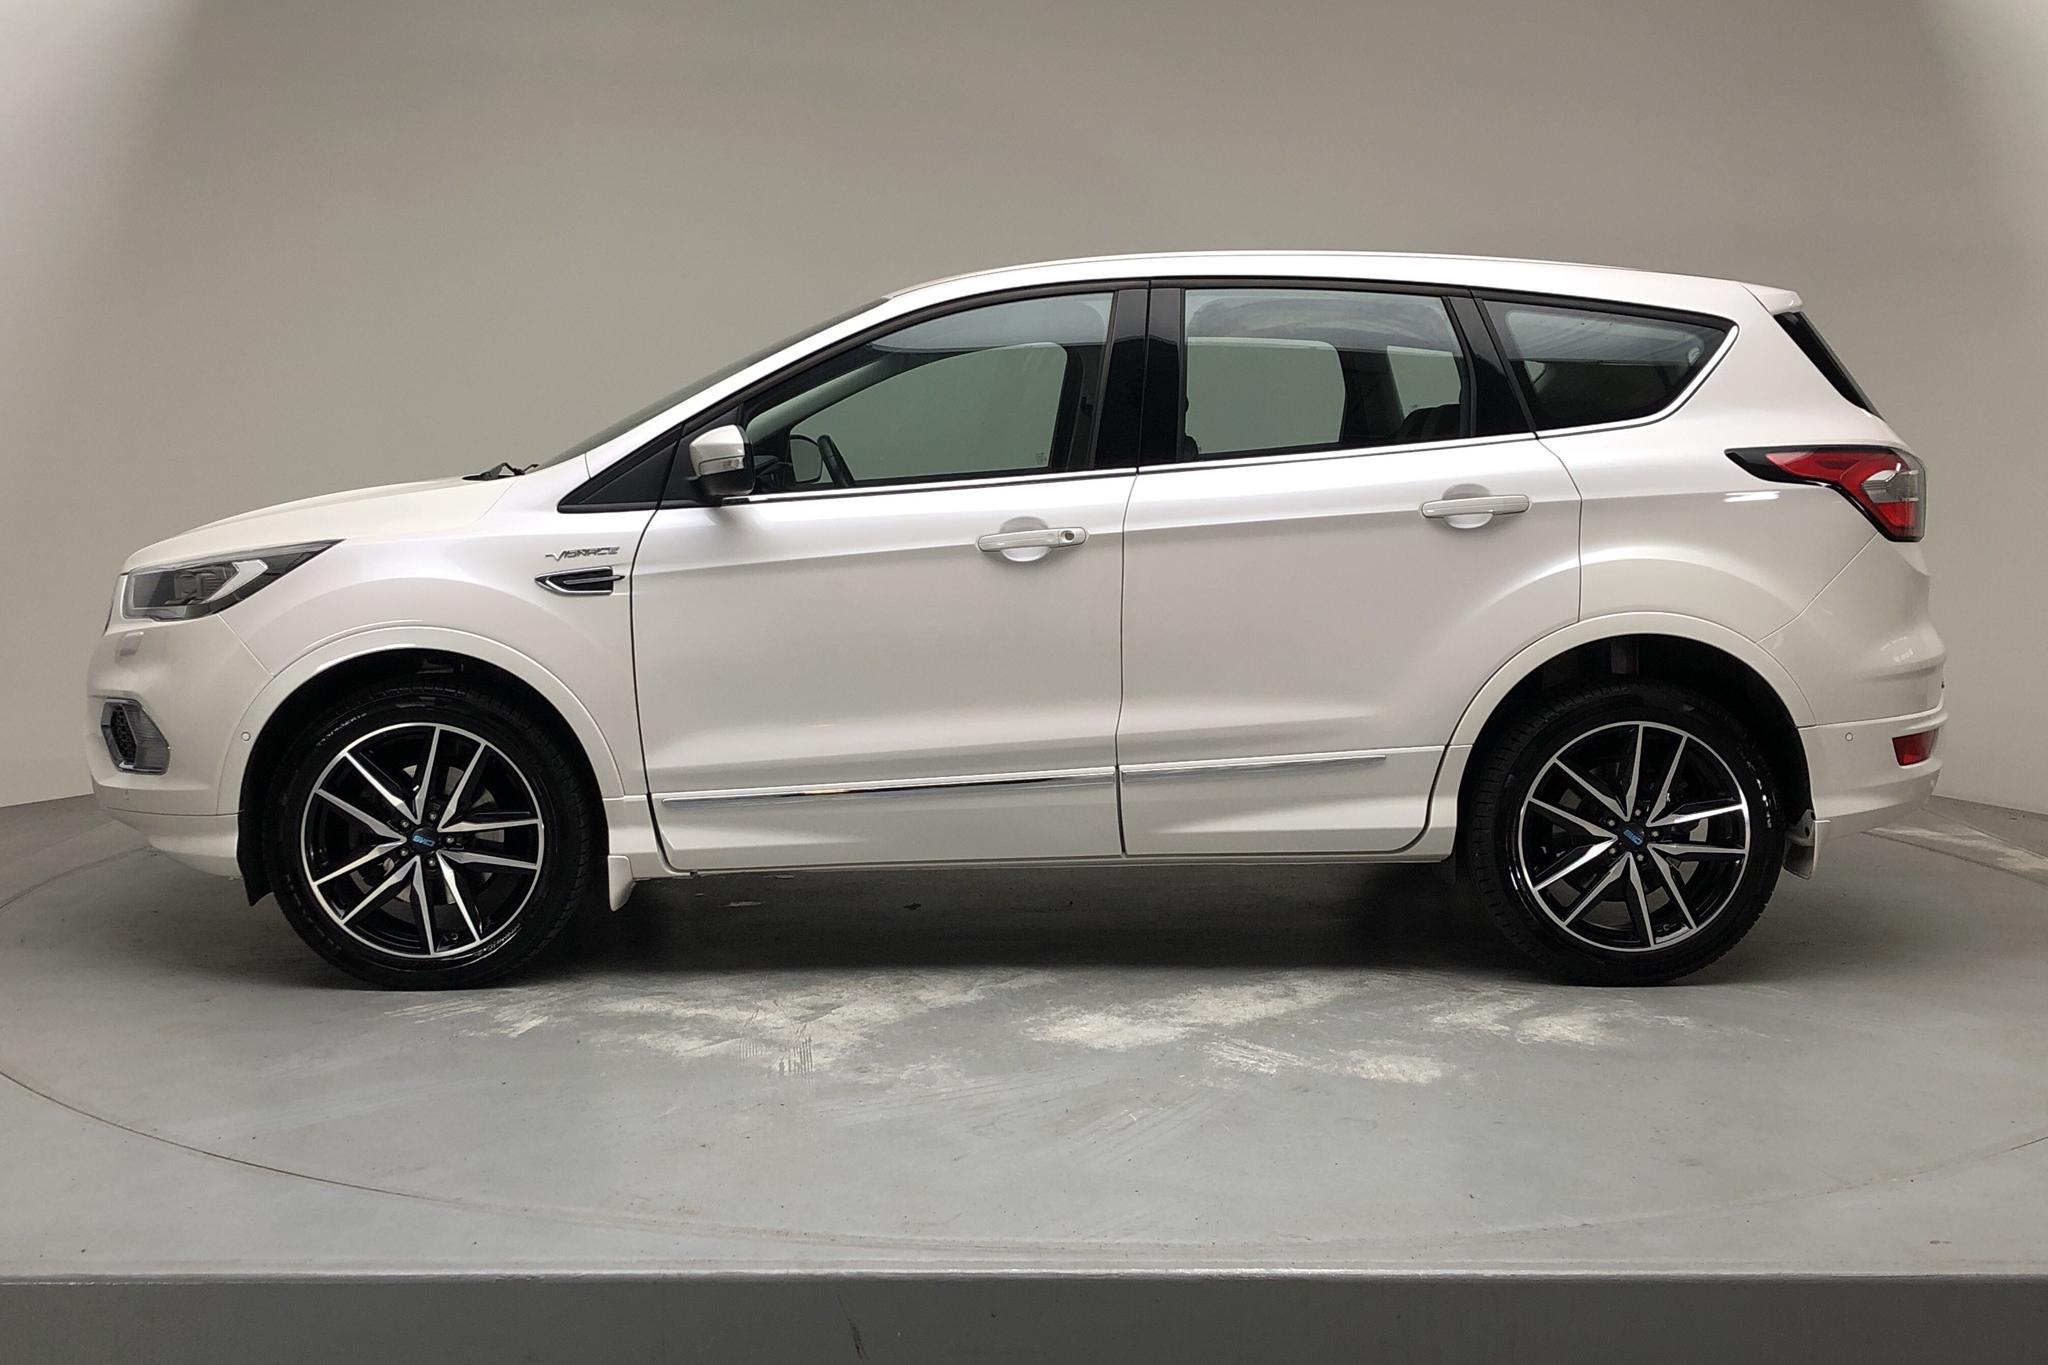 Ford Kuga 2.0 TDCi AWD (180hk) - 144 670 km - Automatic - white - 2017